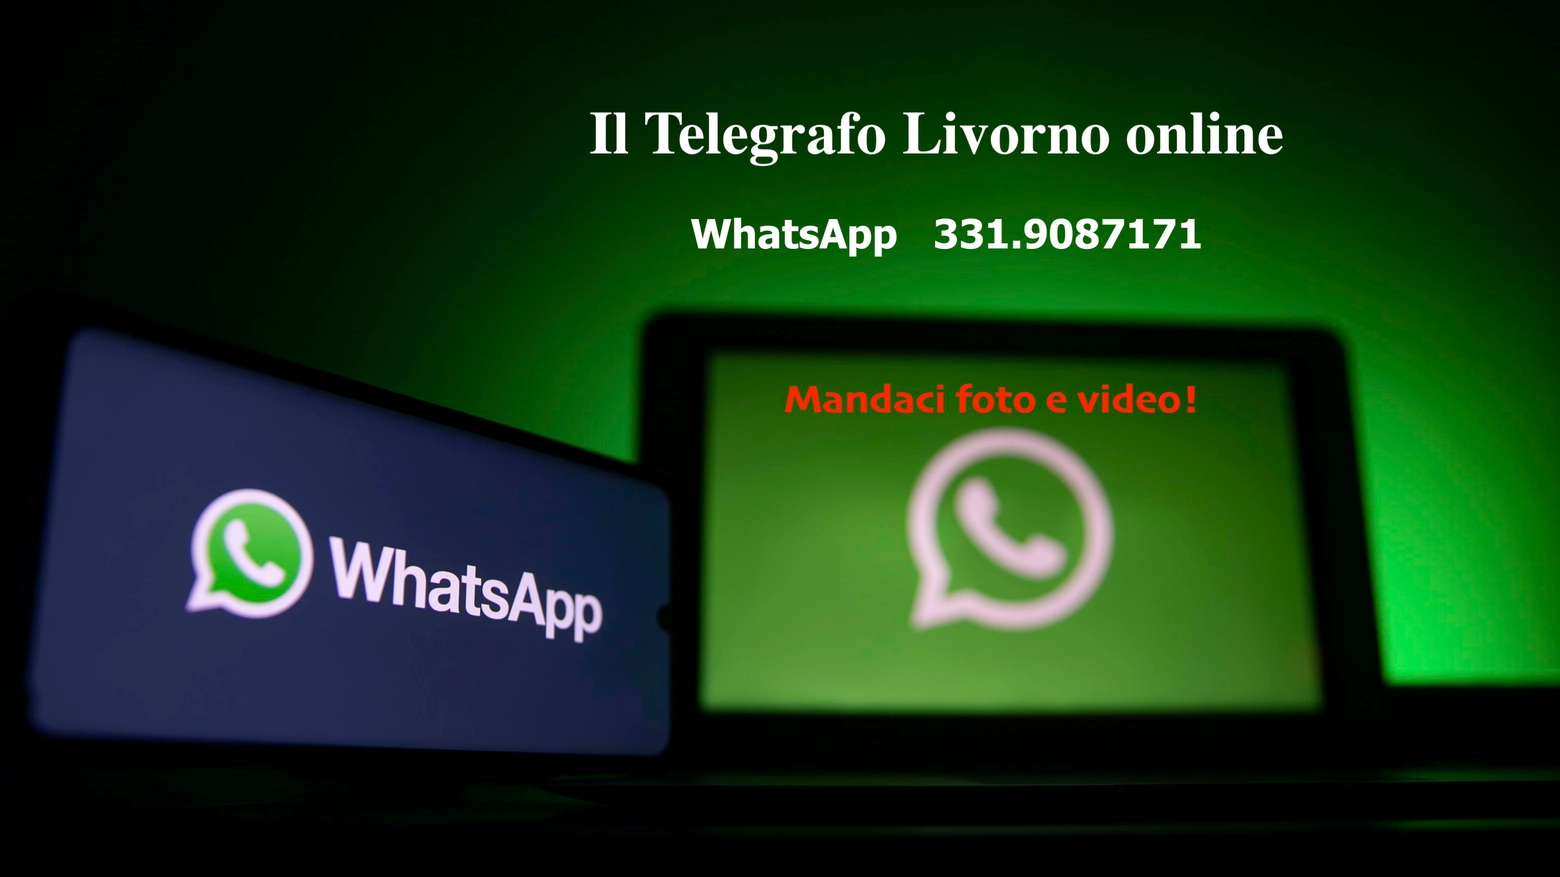 WhatsApp Telegrafo Livorno online